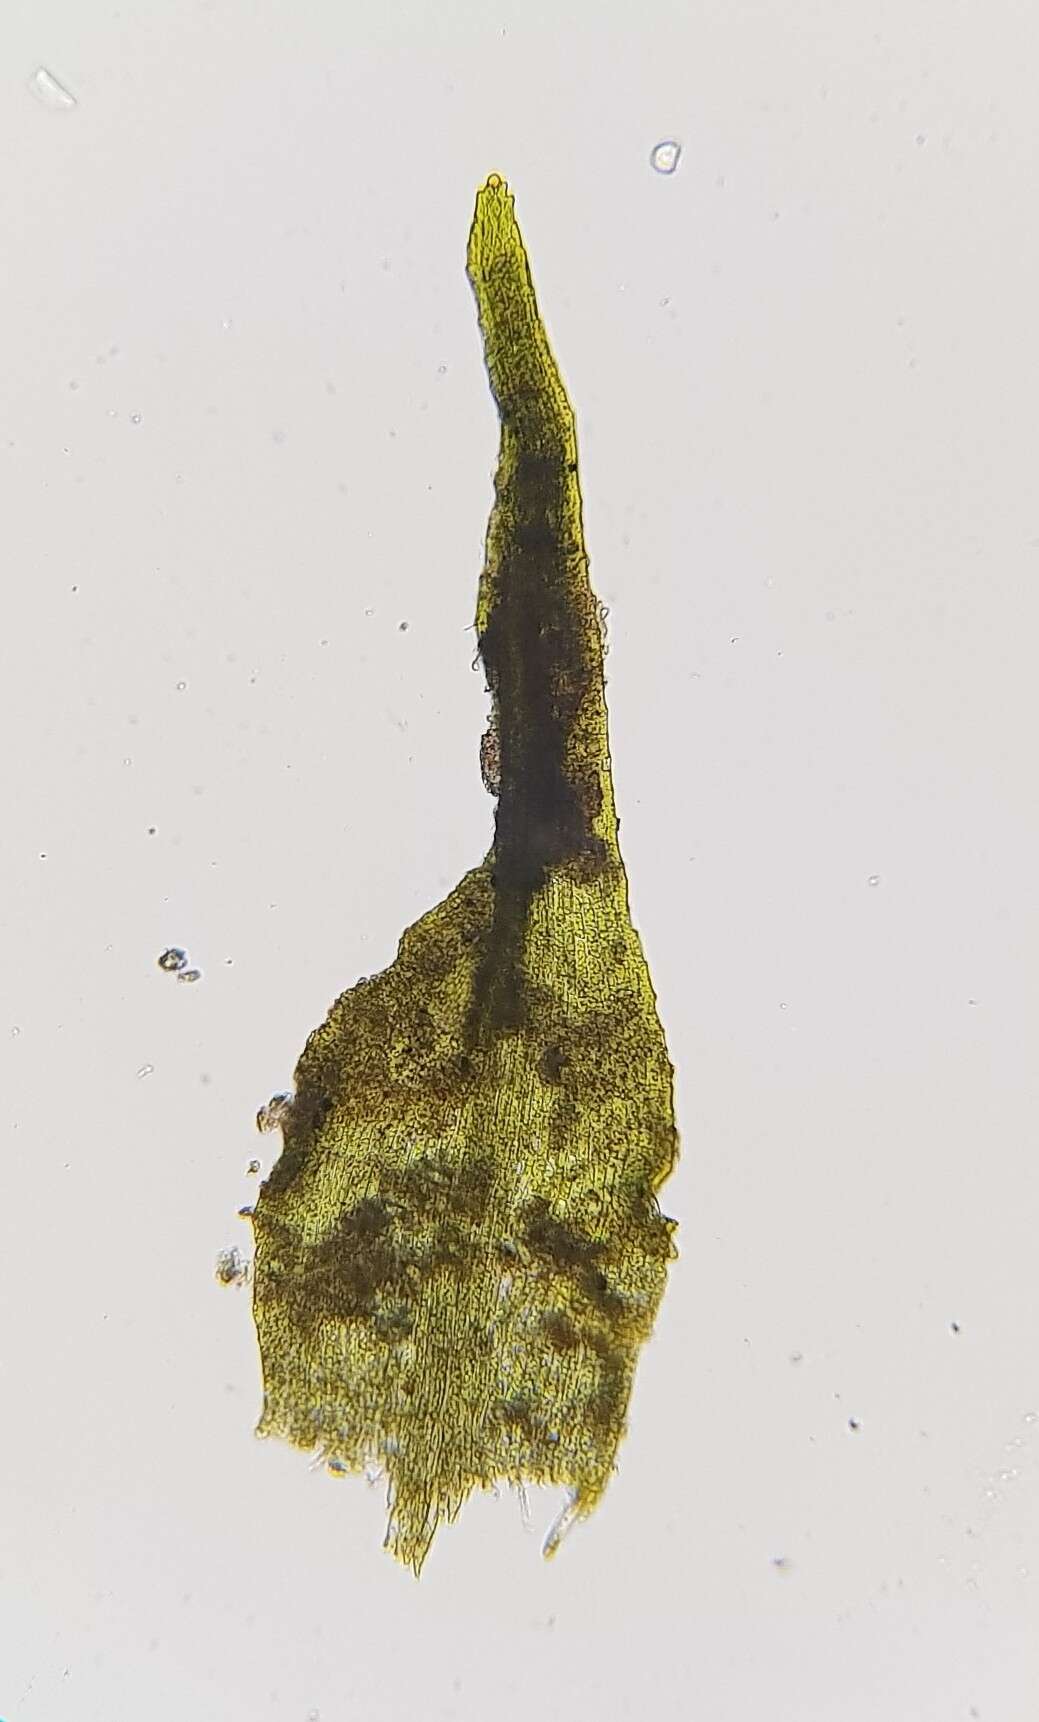 Image of <i>Dicranella staphylina</i>